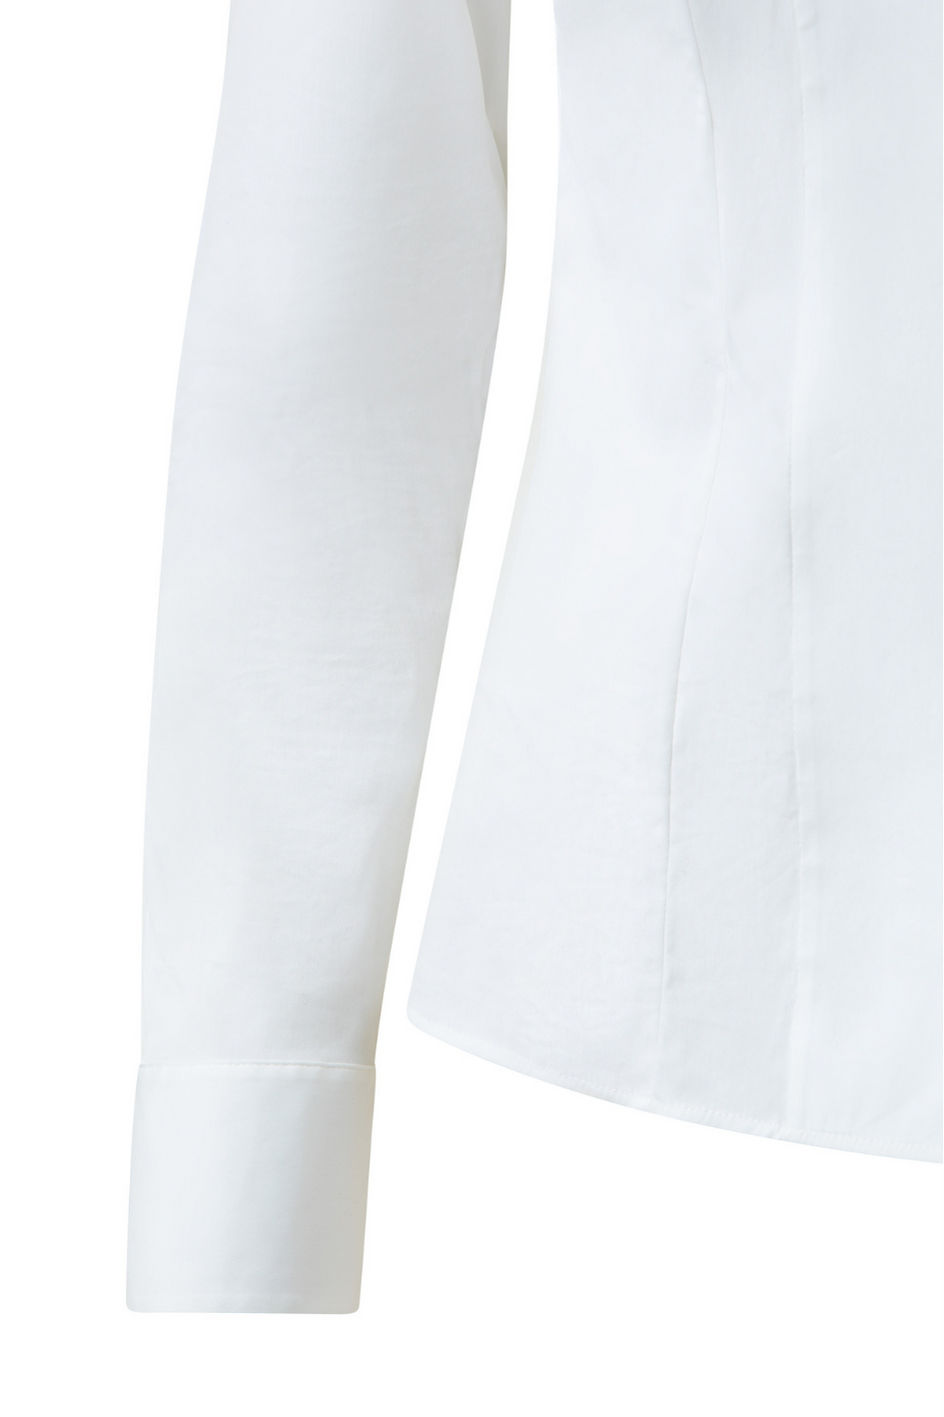 White long sleeved Blouse